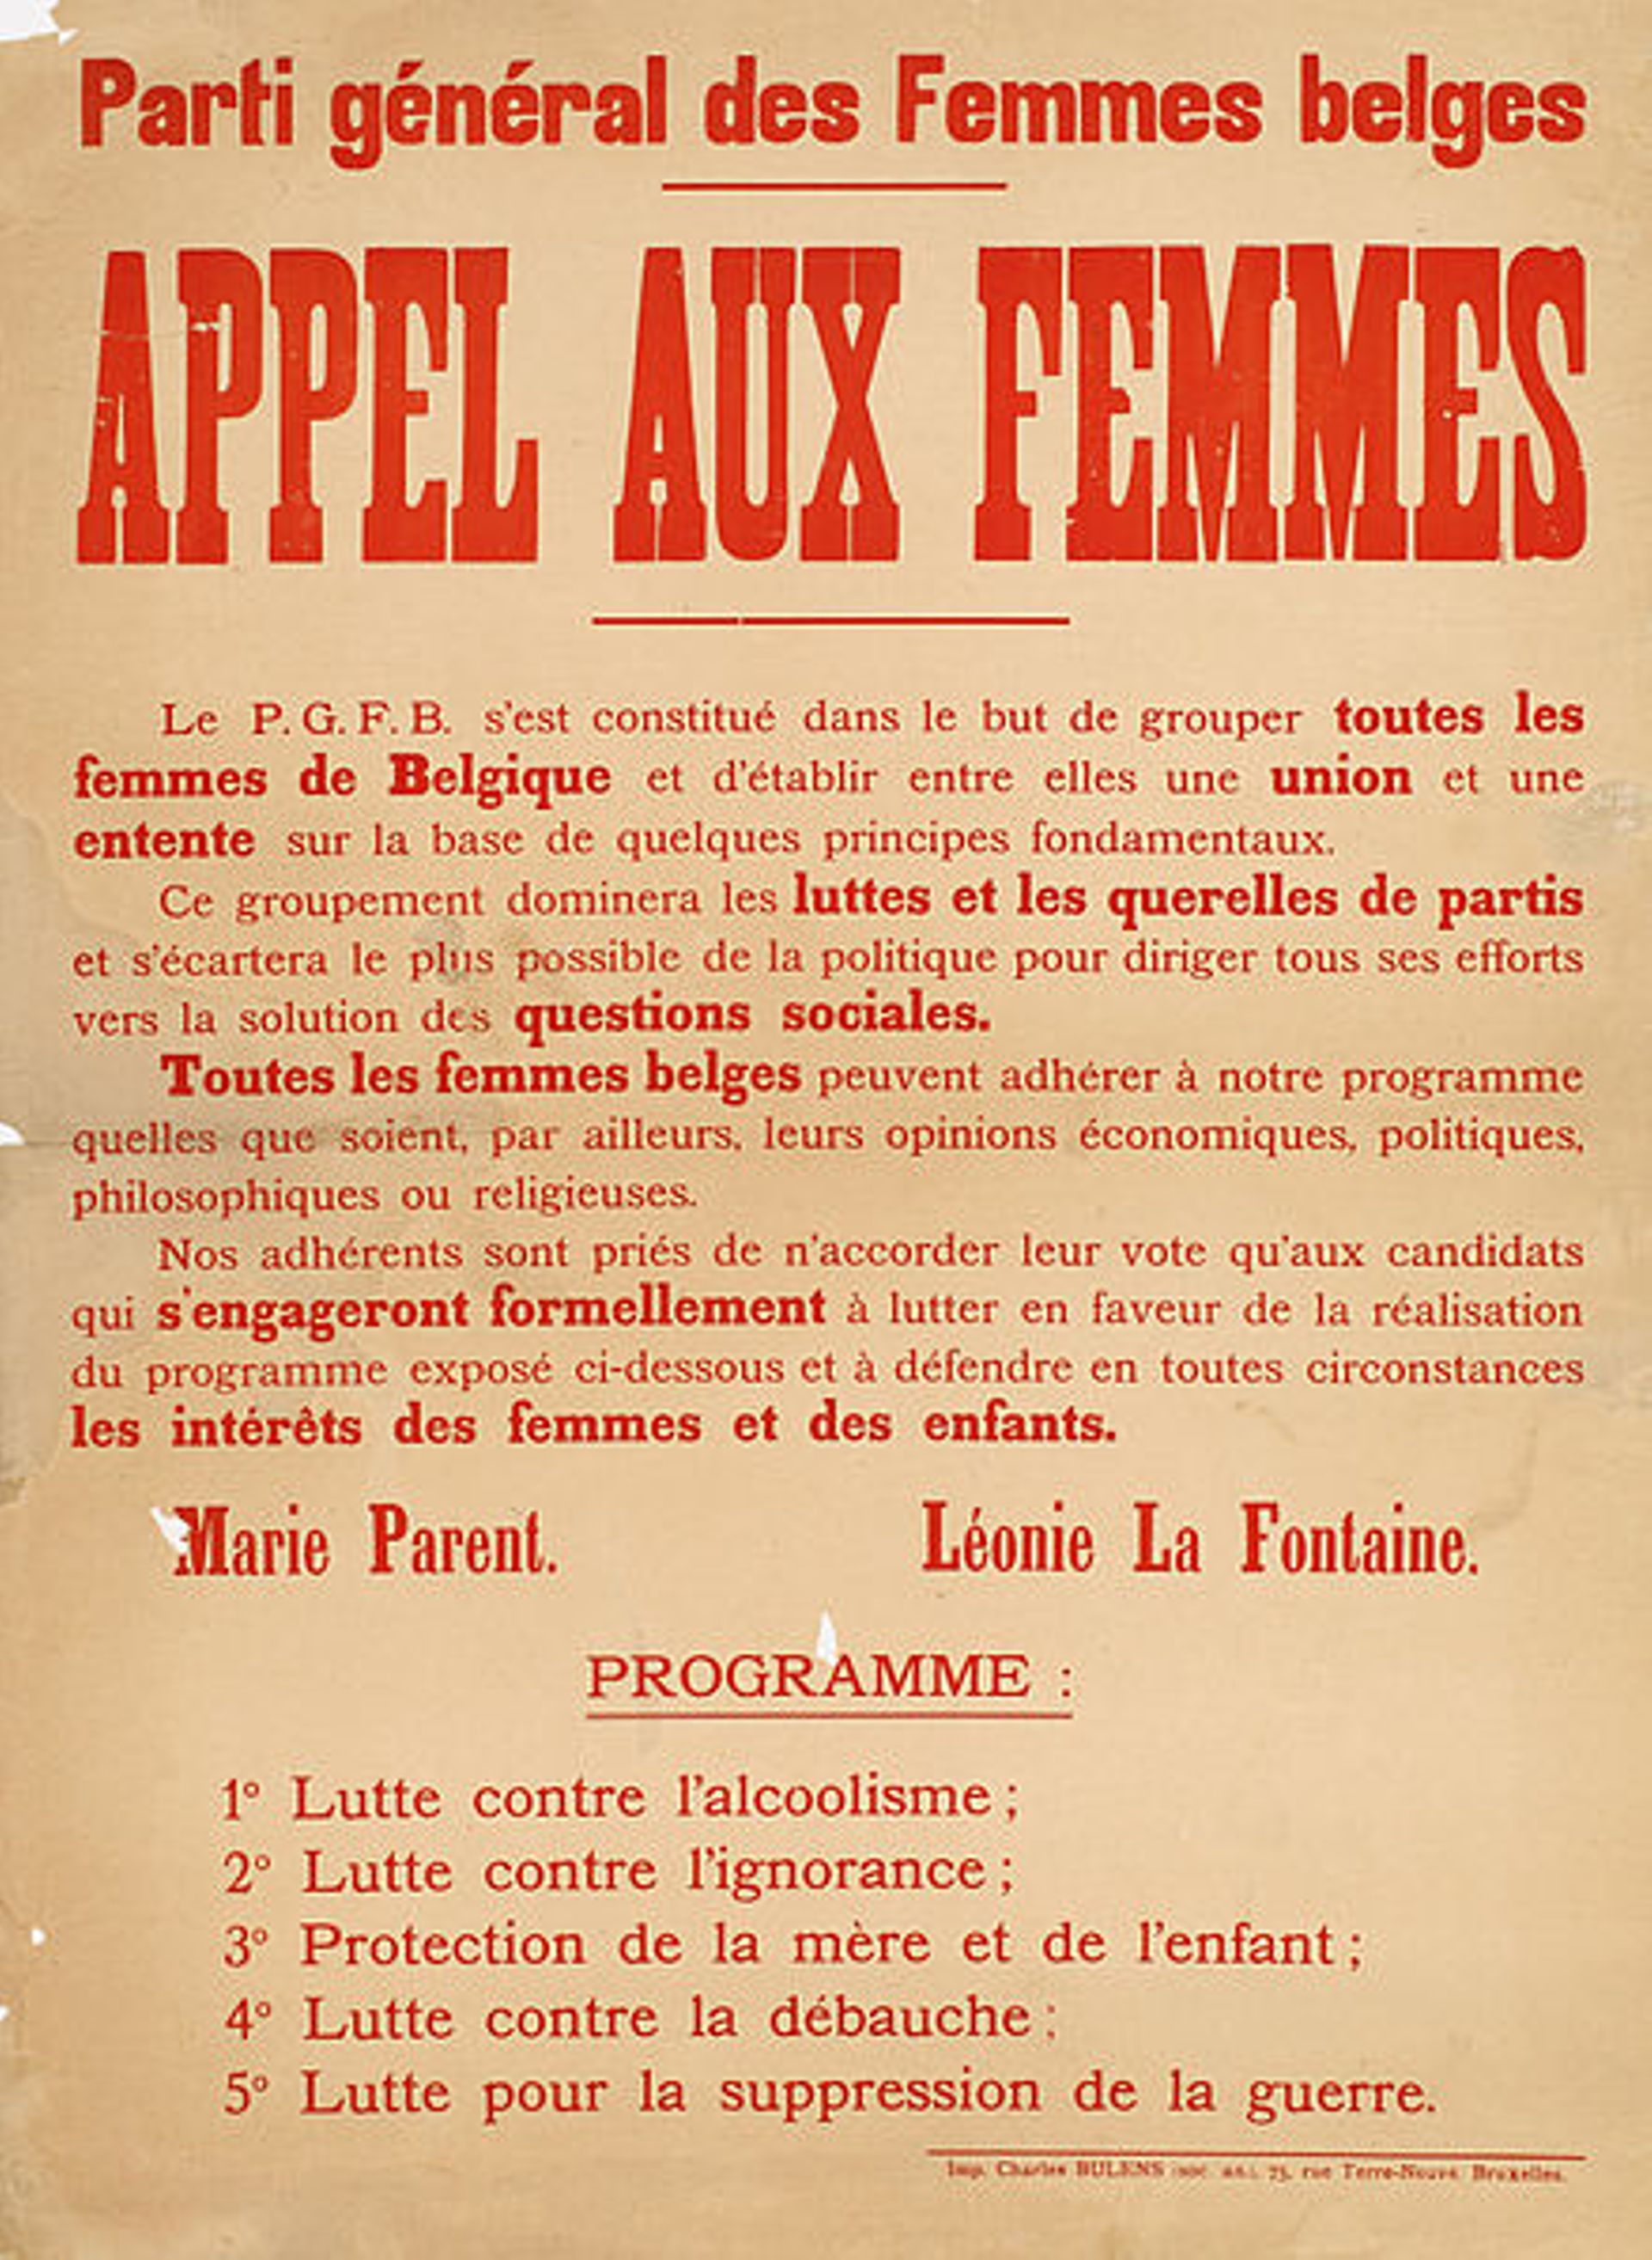 "Appel aux femmes" du Parti général des Femmes belges, fondé par Léonie La Fontaine et Marie Parent.